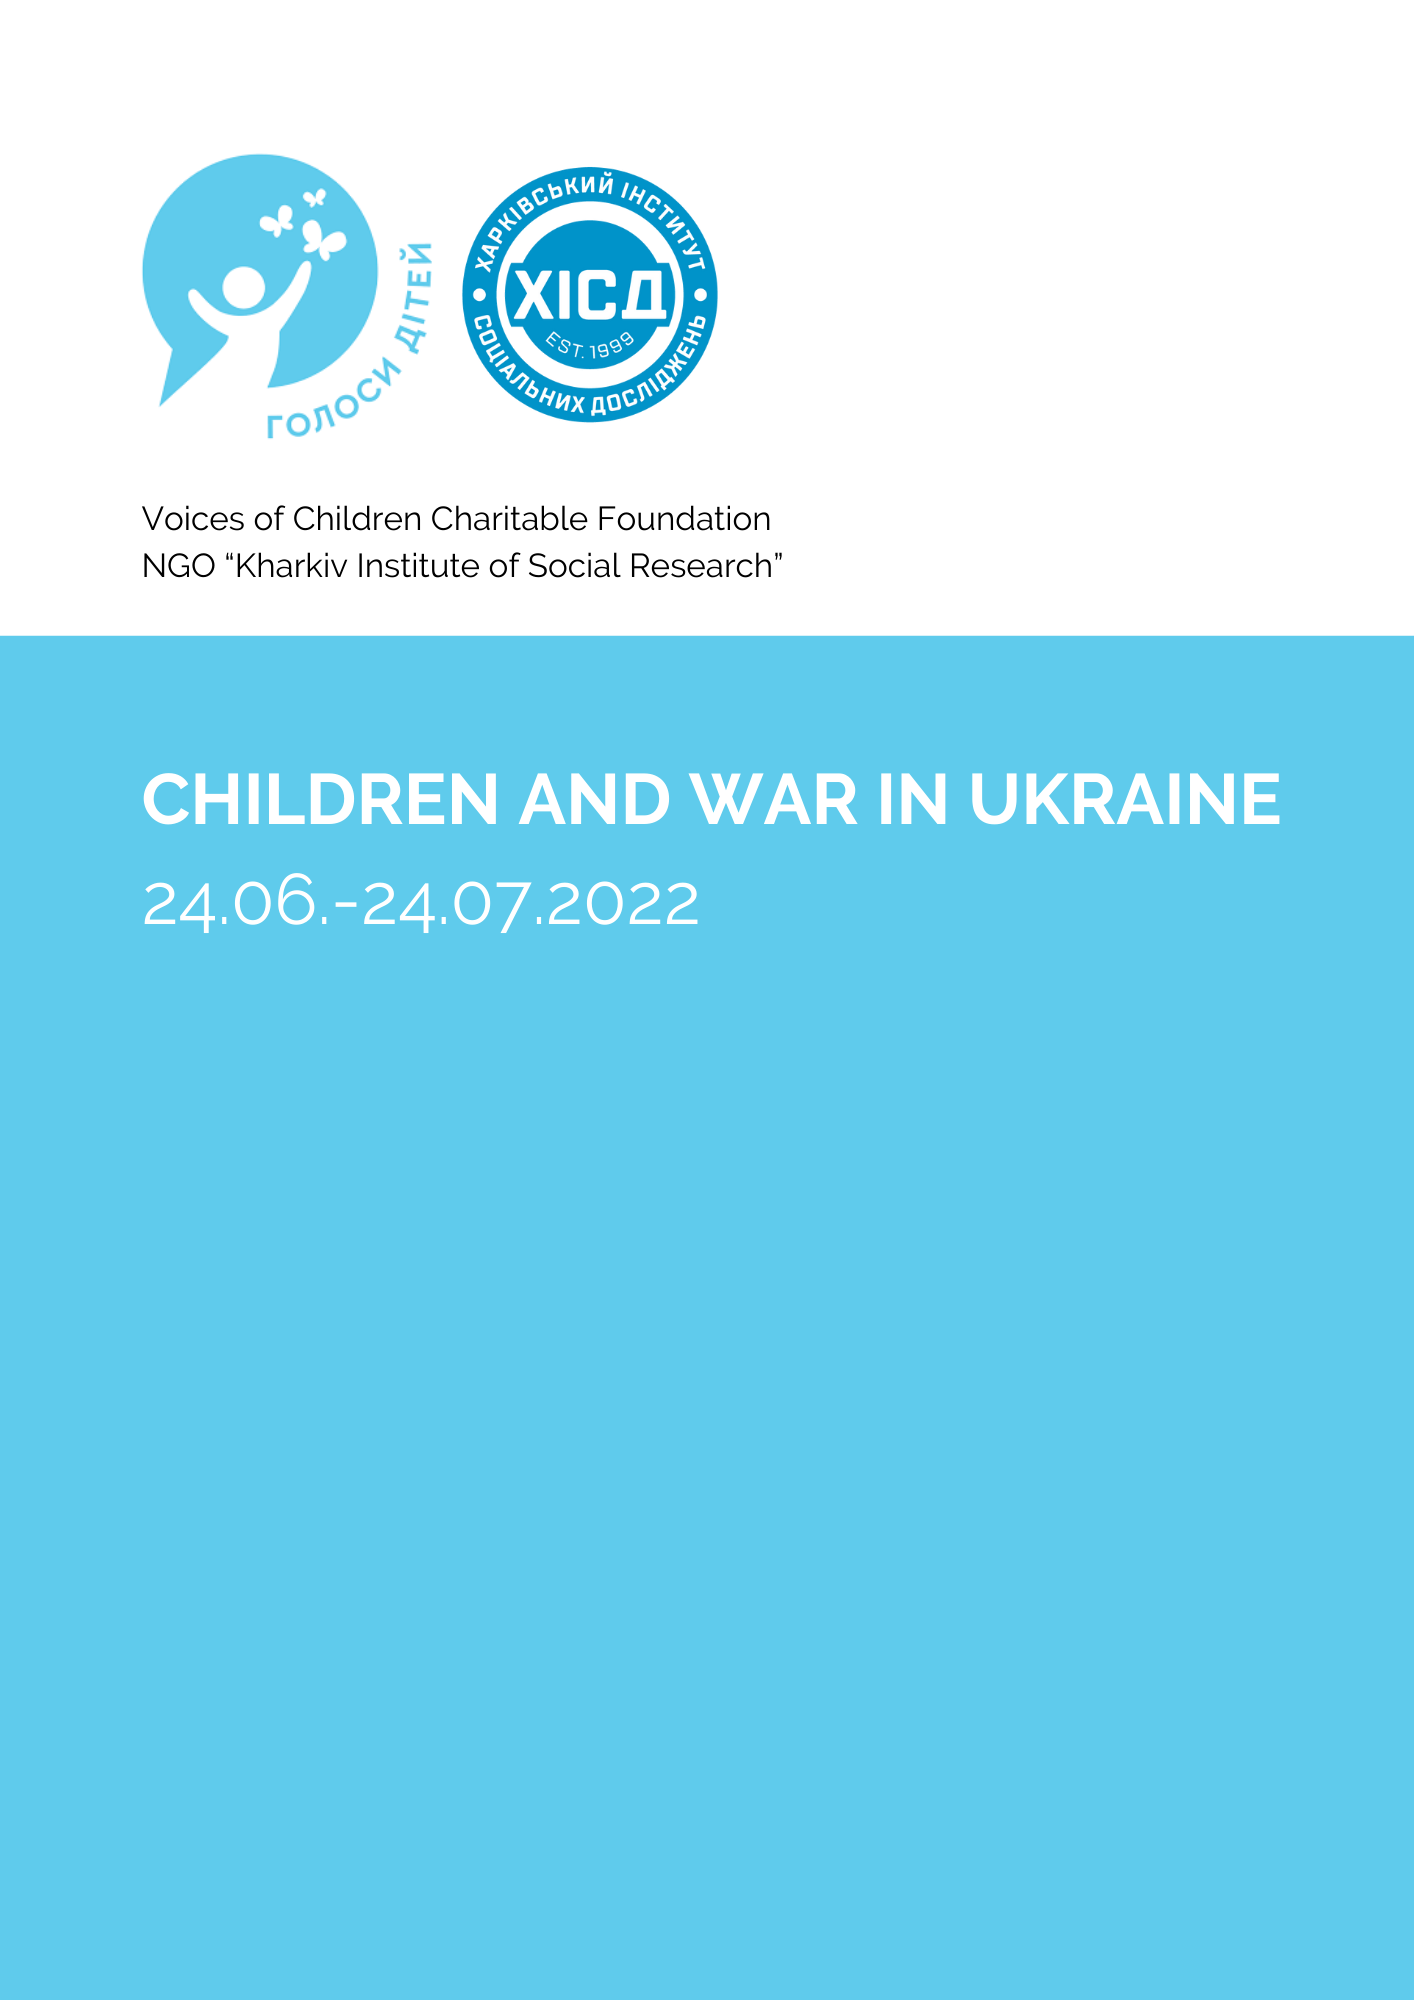 Children and the war in Ukraine: 24.06–24.07.2022